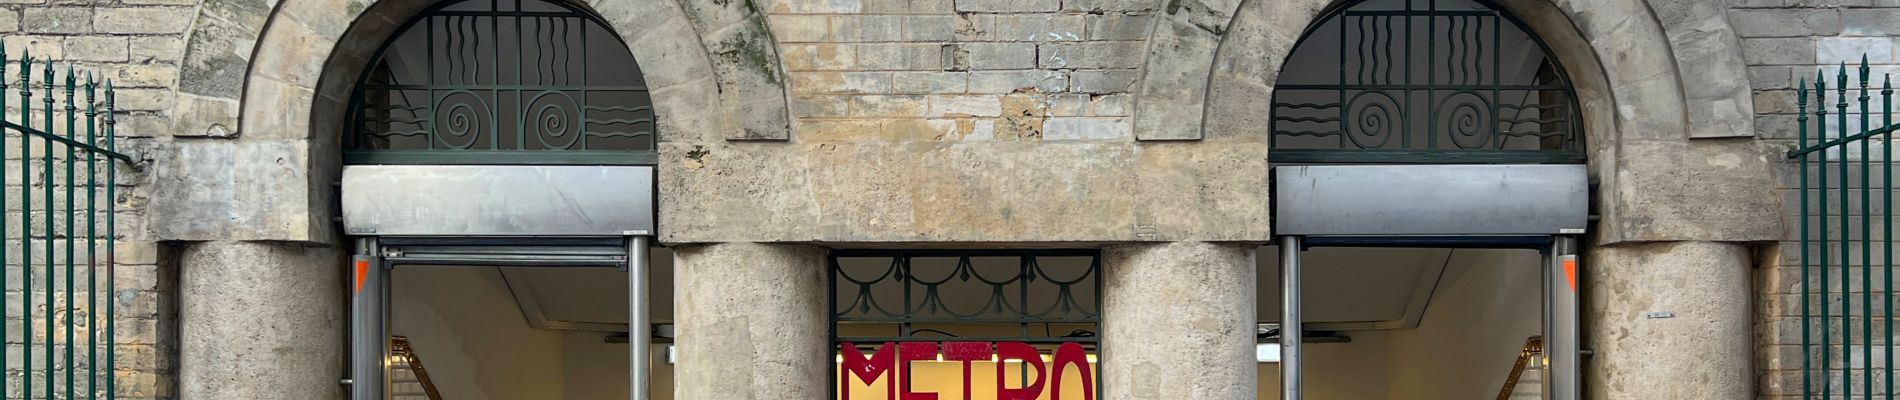 Punto de interés París - Metro Place Monge - Photo